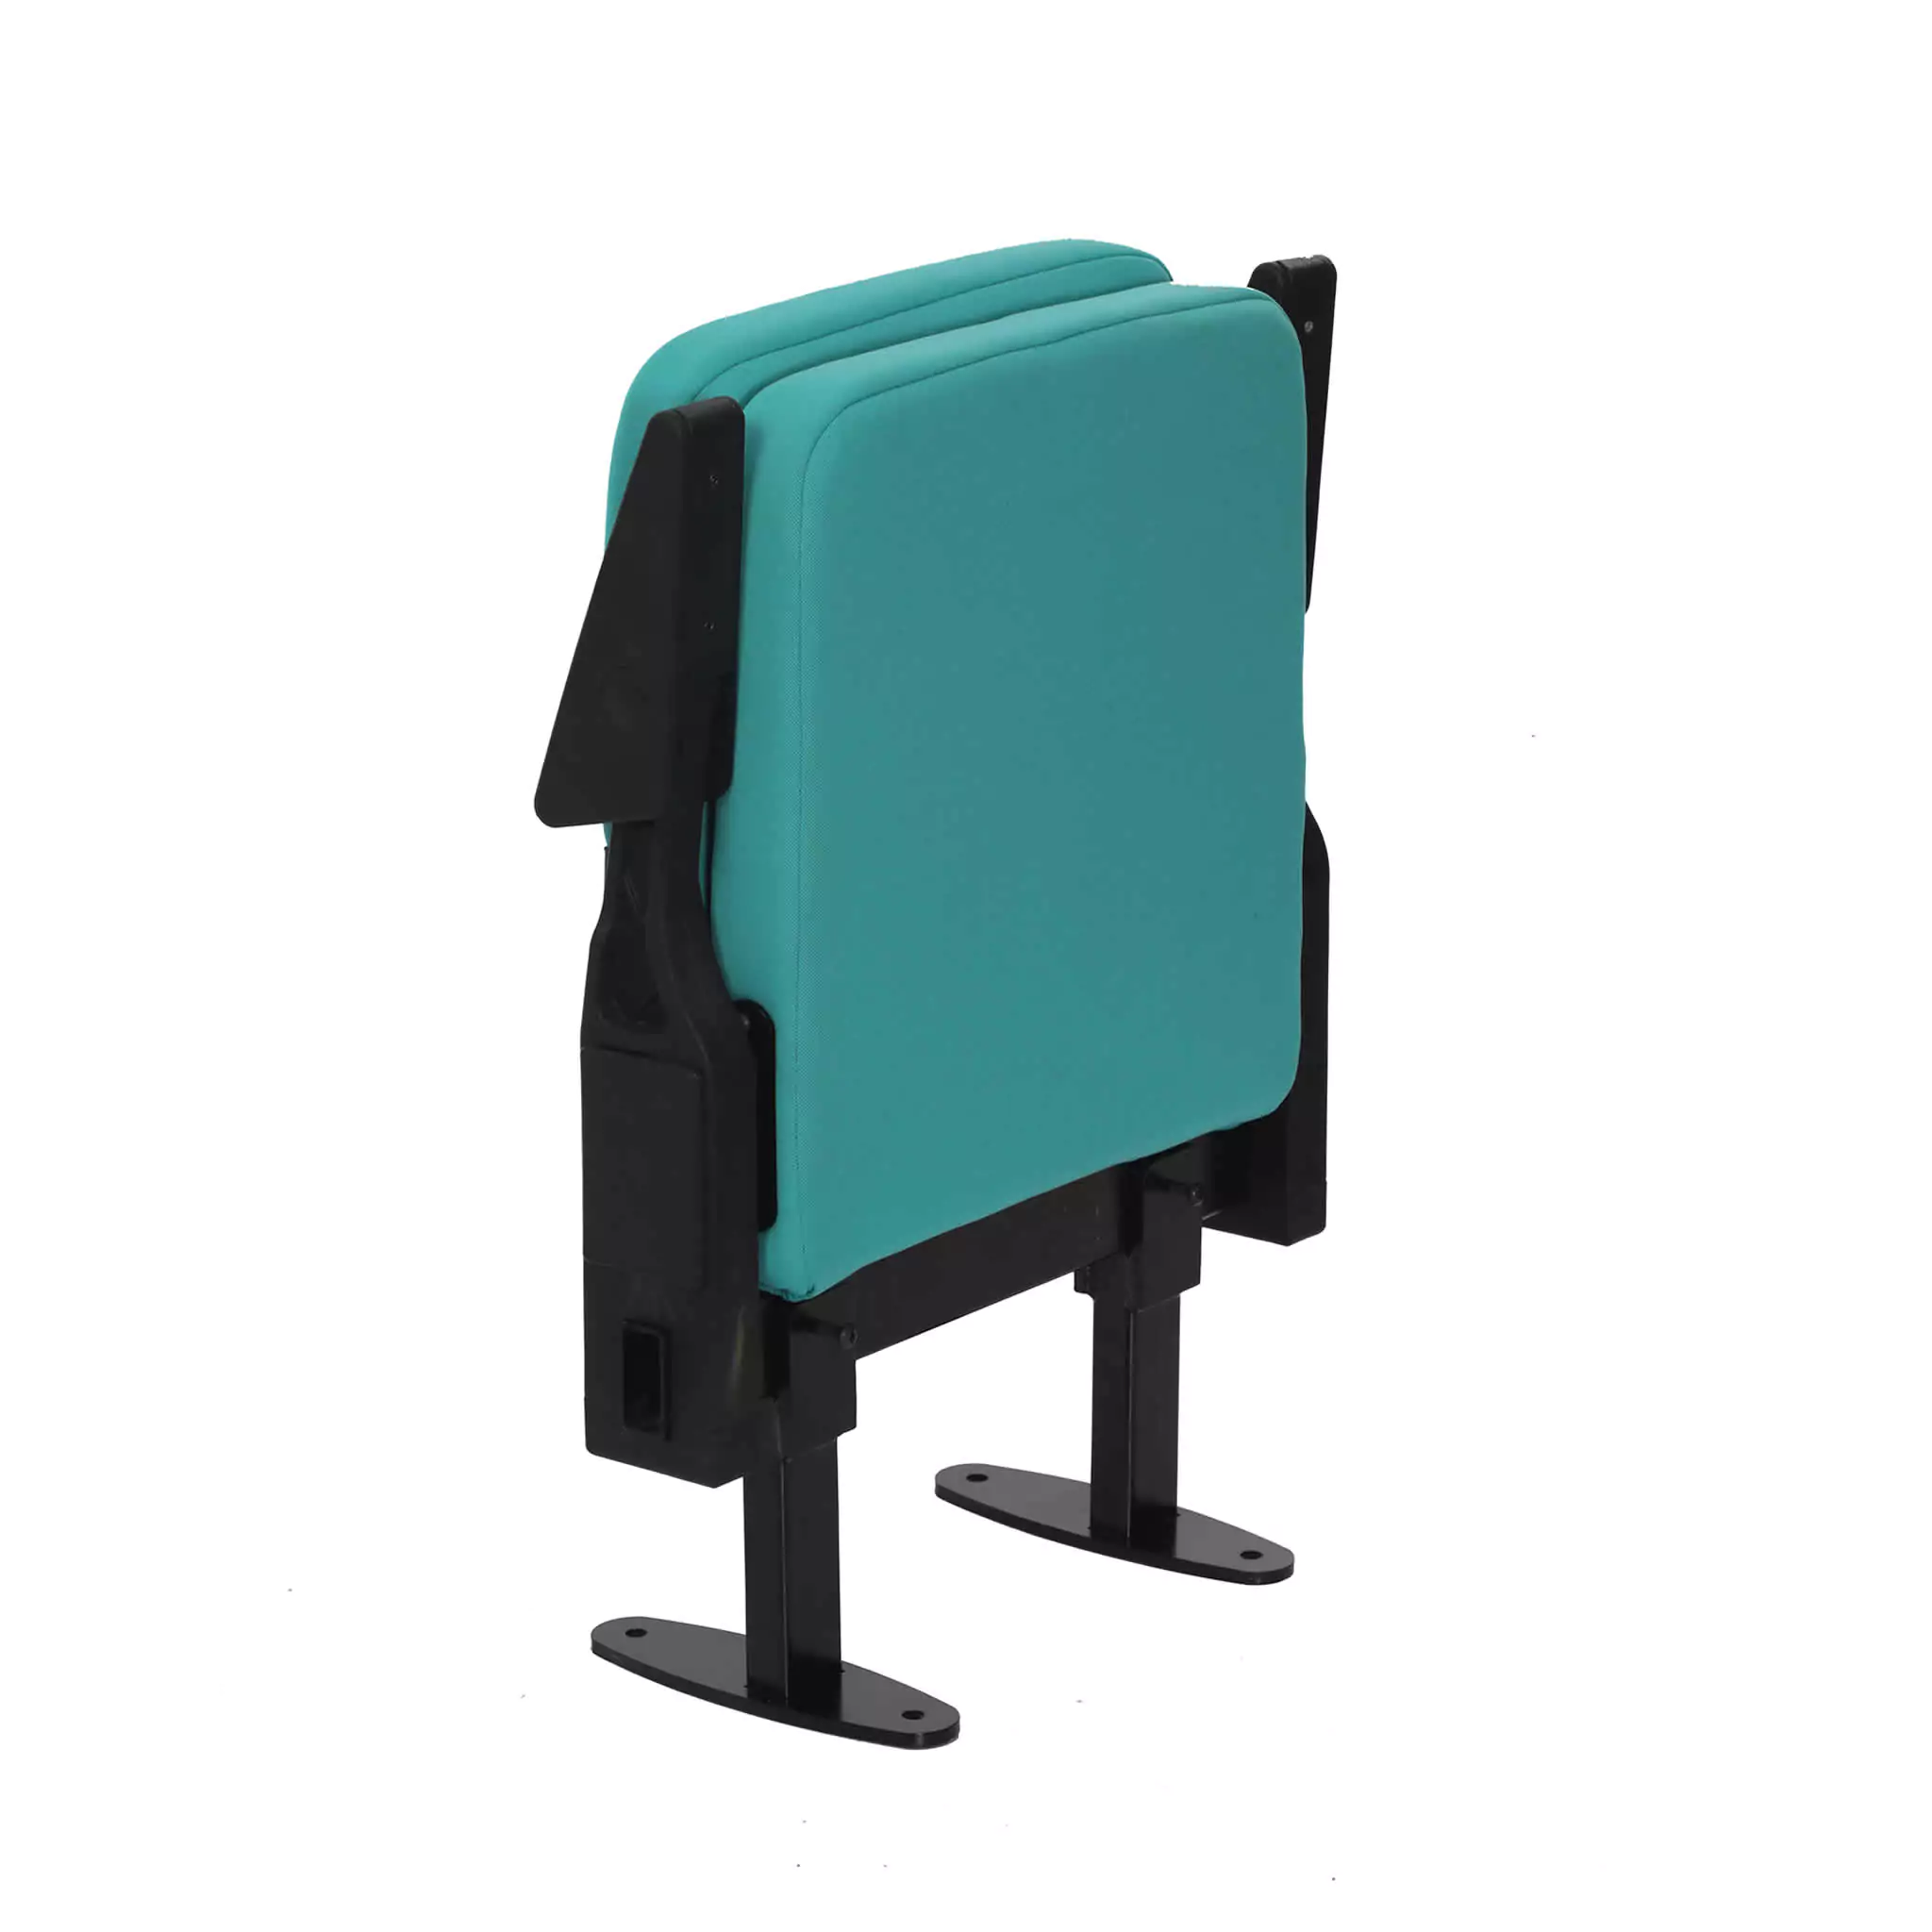 Simko Seating Product Telescopic Stadium Seat Jasper 02